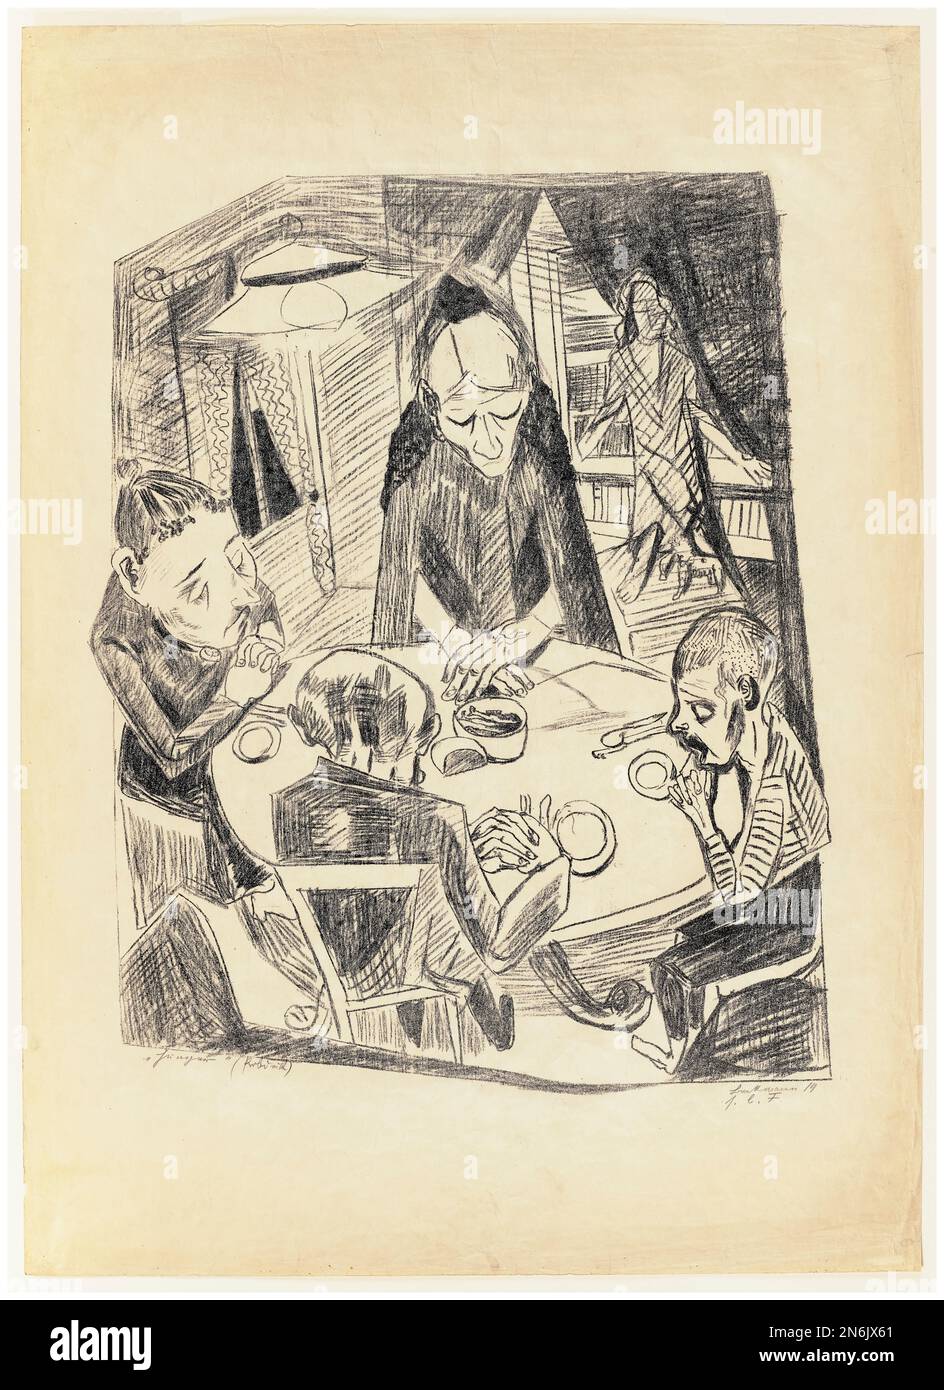 El hambre, impresión litográfica de un dibujo en tiza de Max Beckmann, 1919 Foto de stock